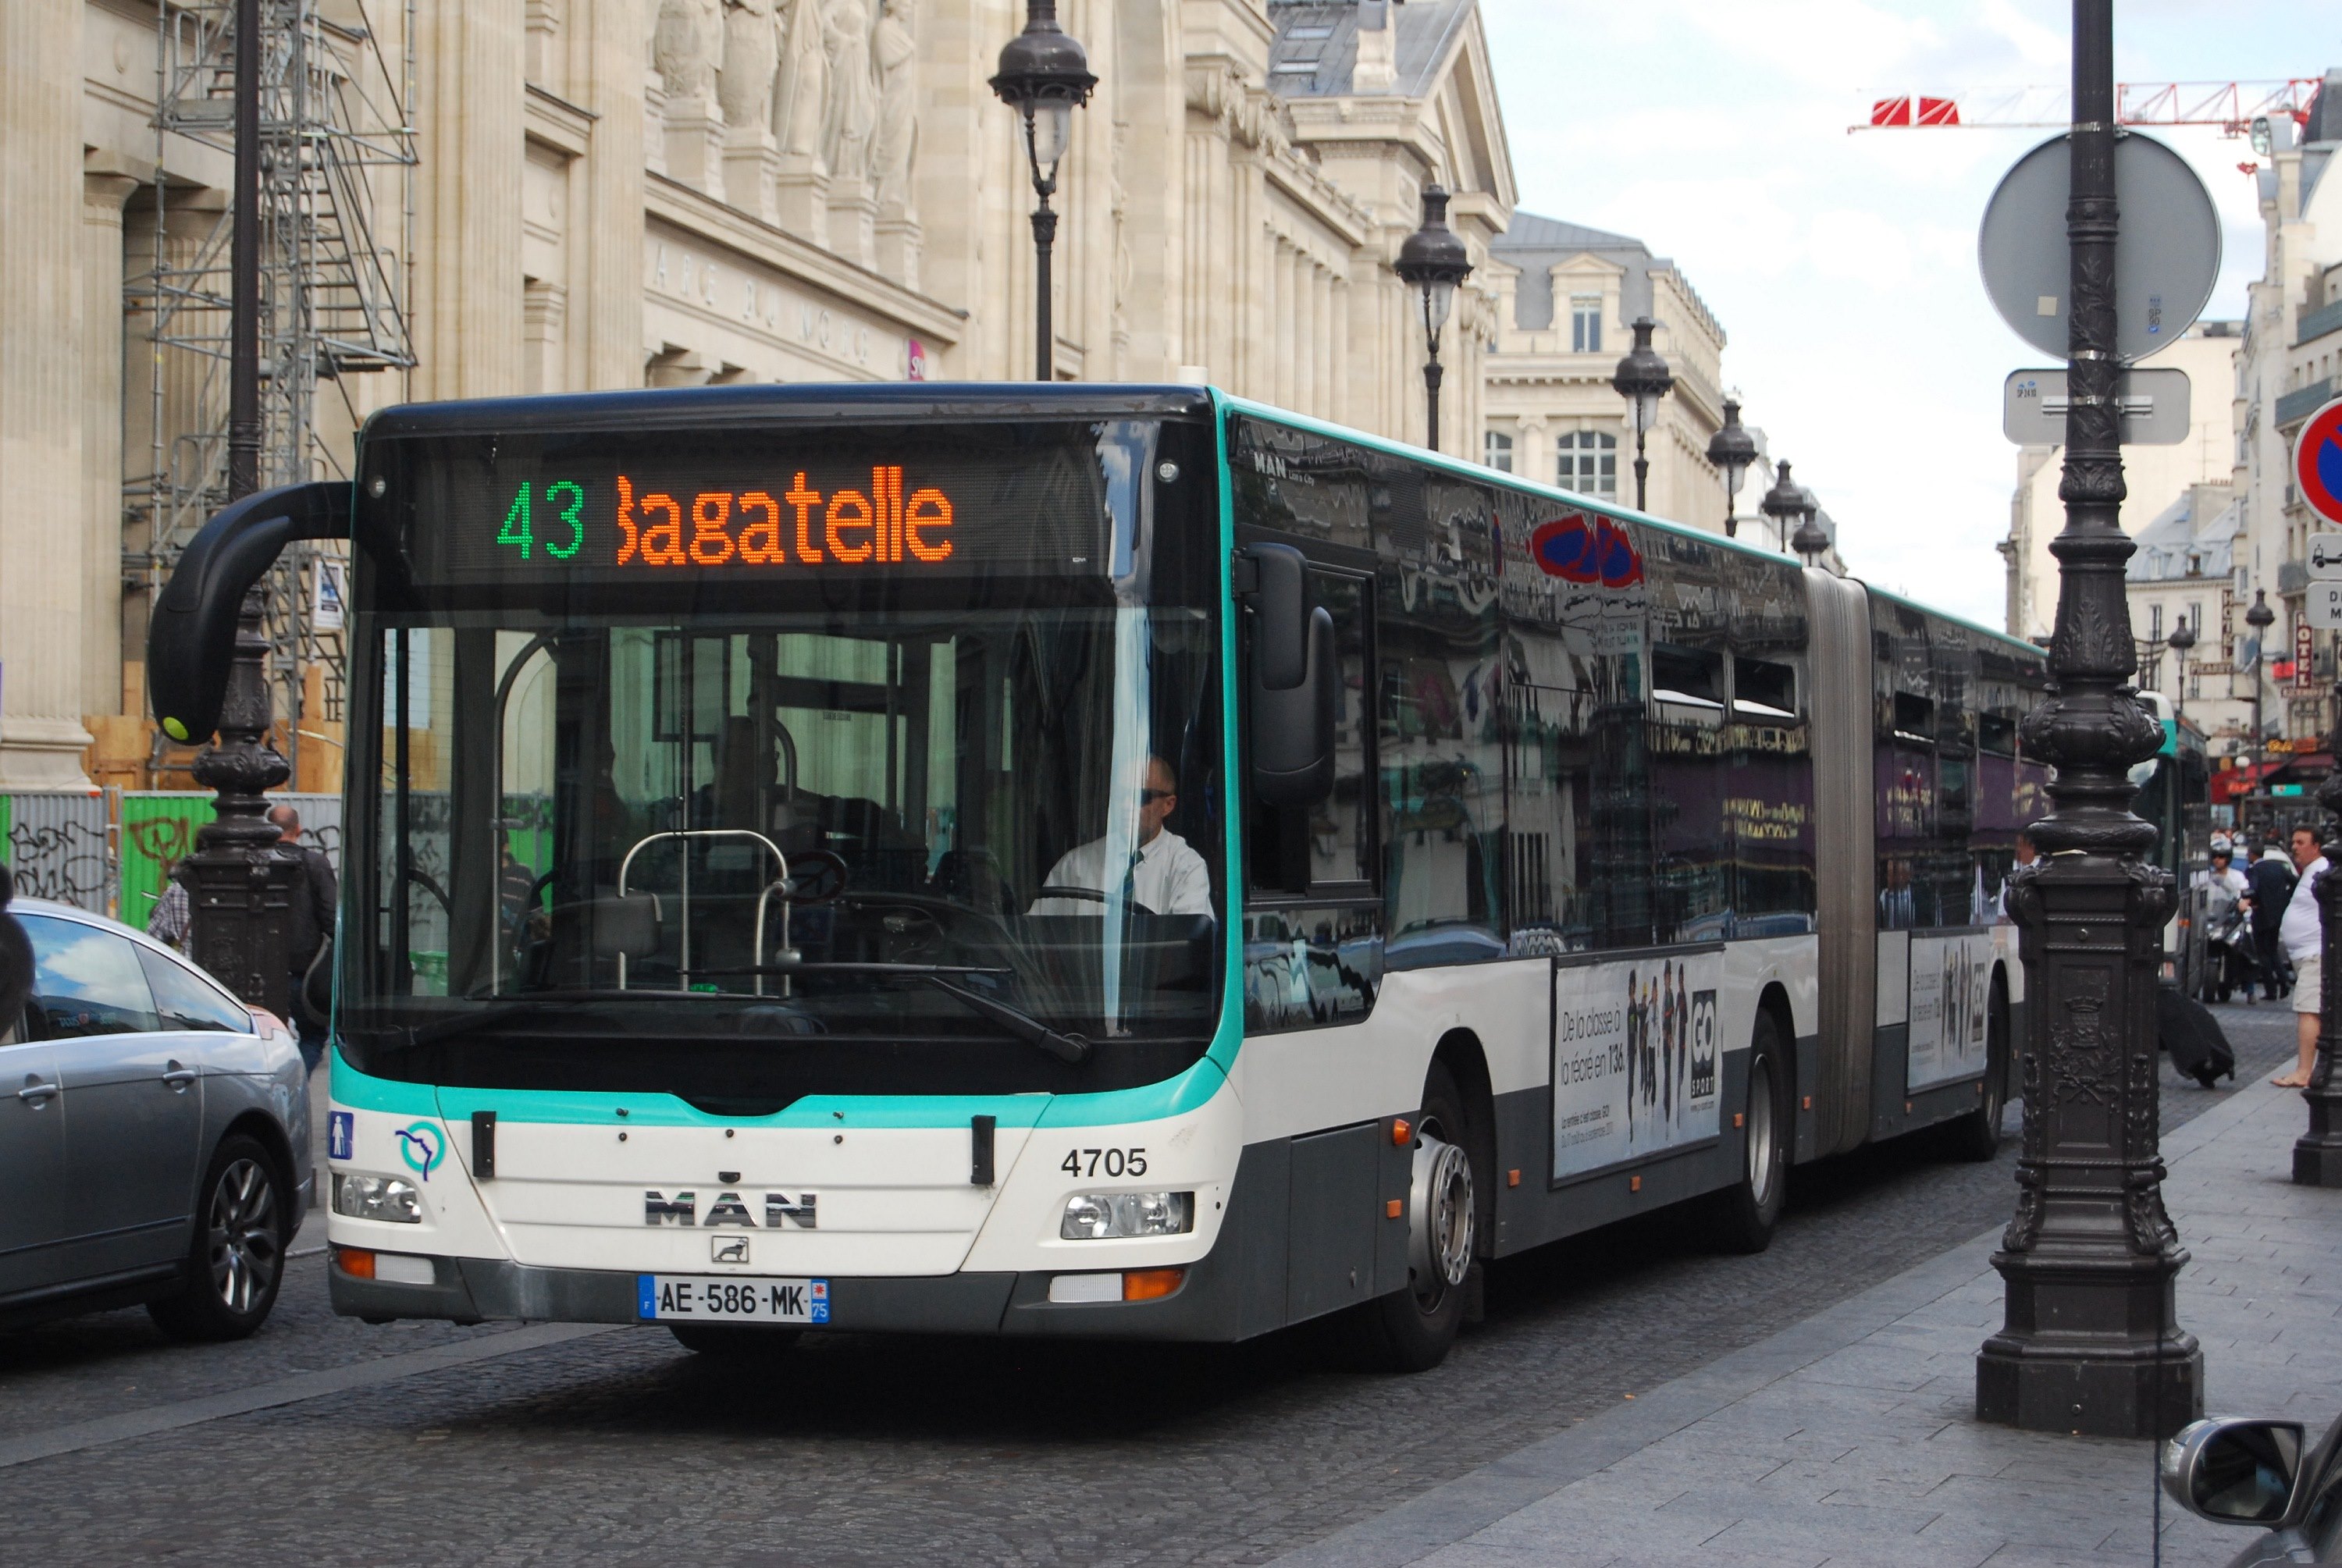 43 Bagatelle Gare du Nord